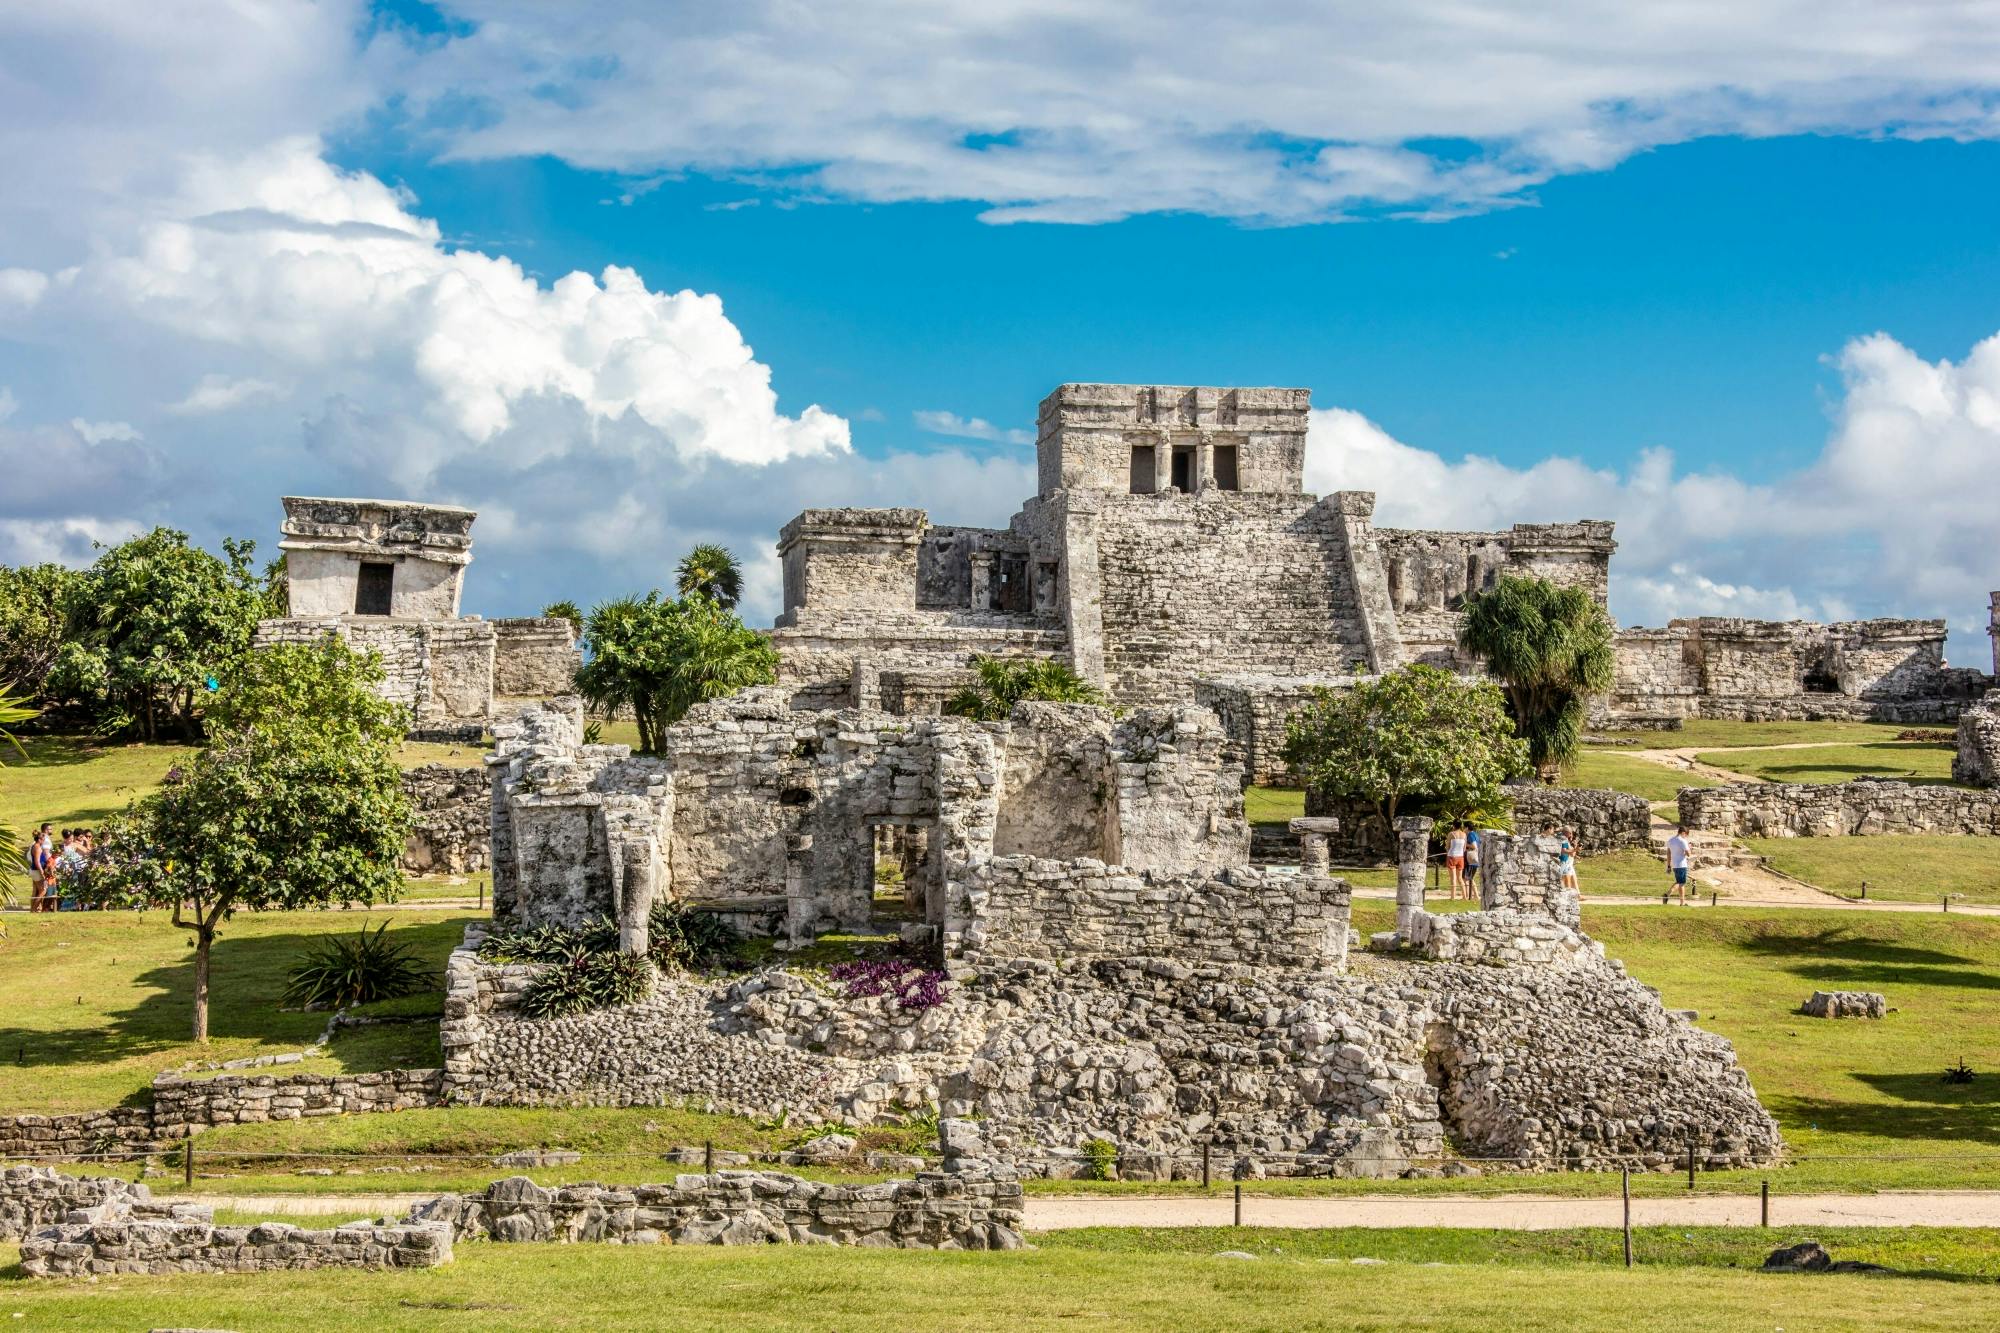 Tulum guidad rundtur och besök i ett modern Maya-samhälle